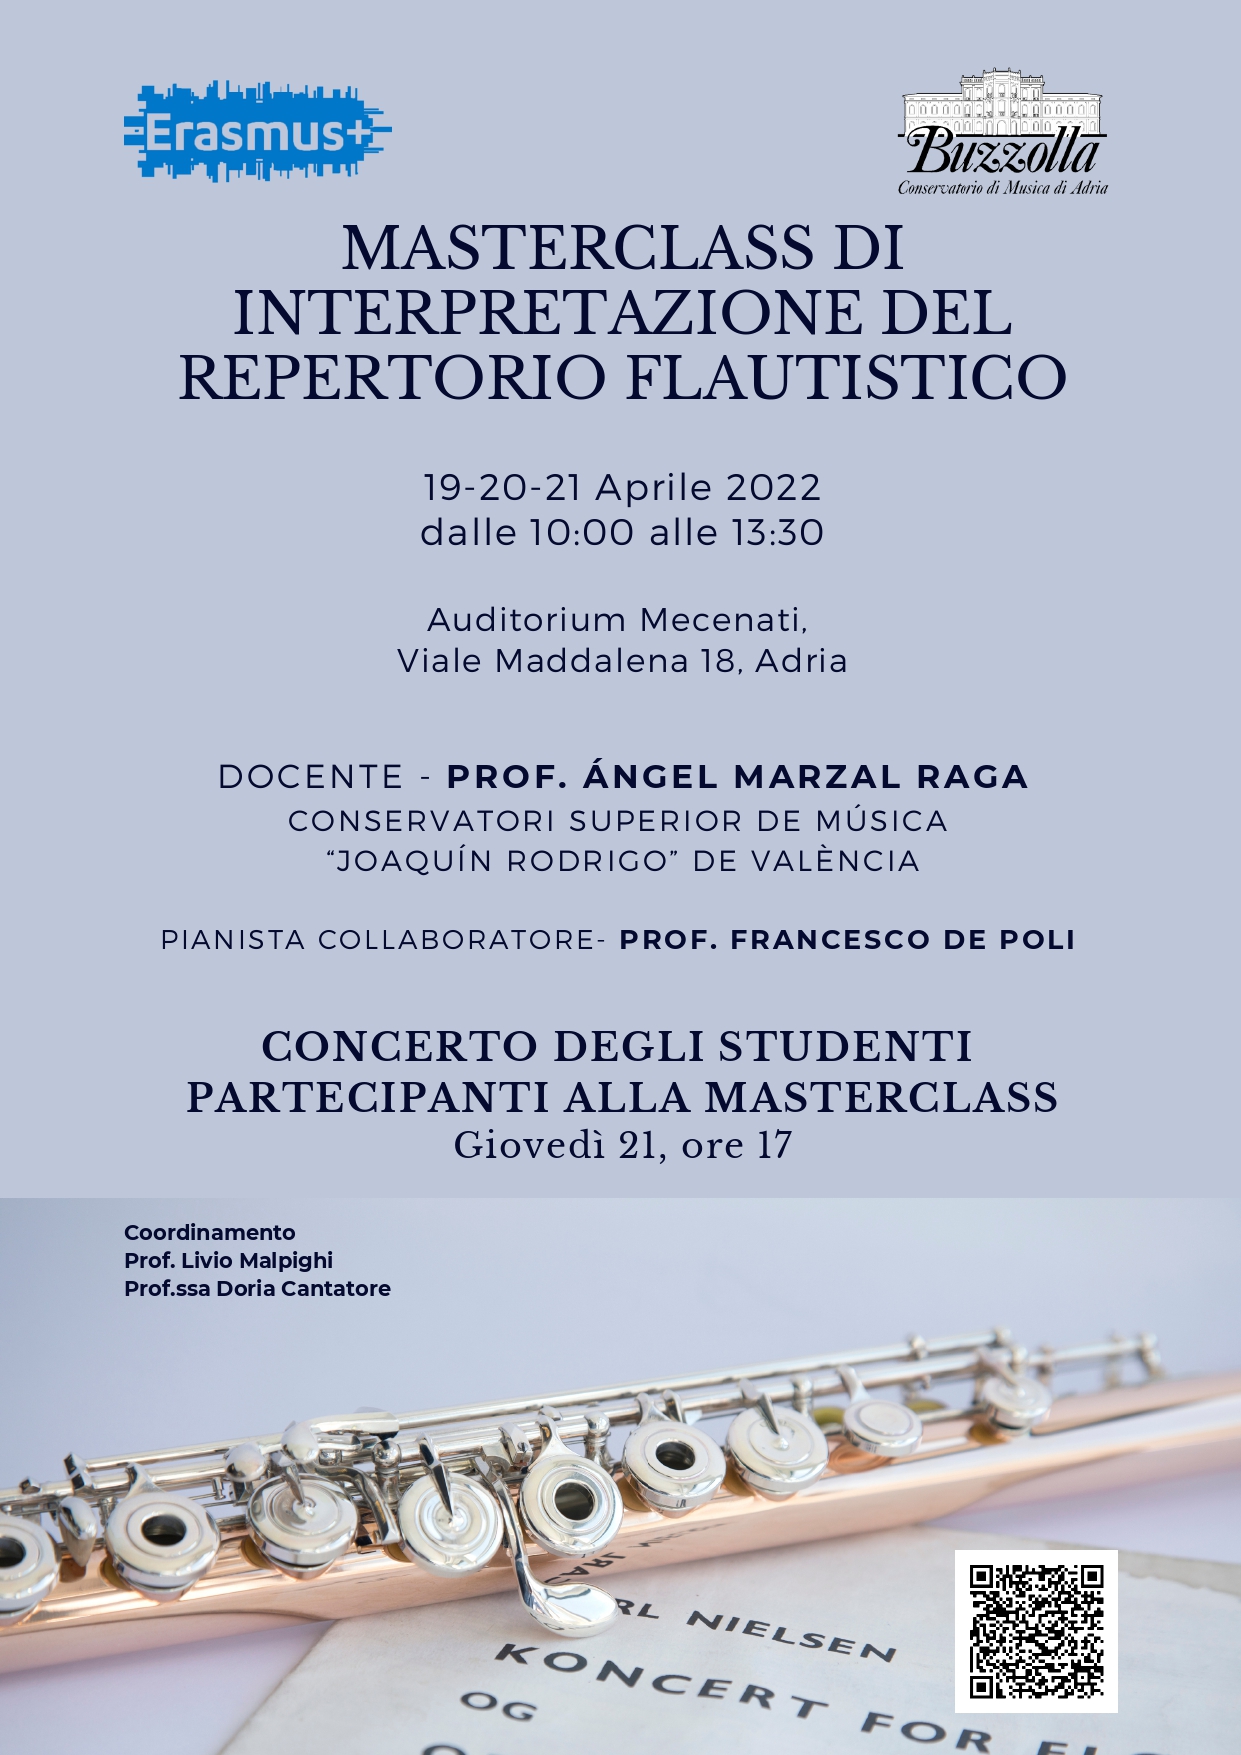 19-20-21 aprile 2022, Masterclass di interpretazione del repertorio flautistico